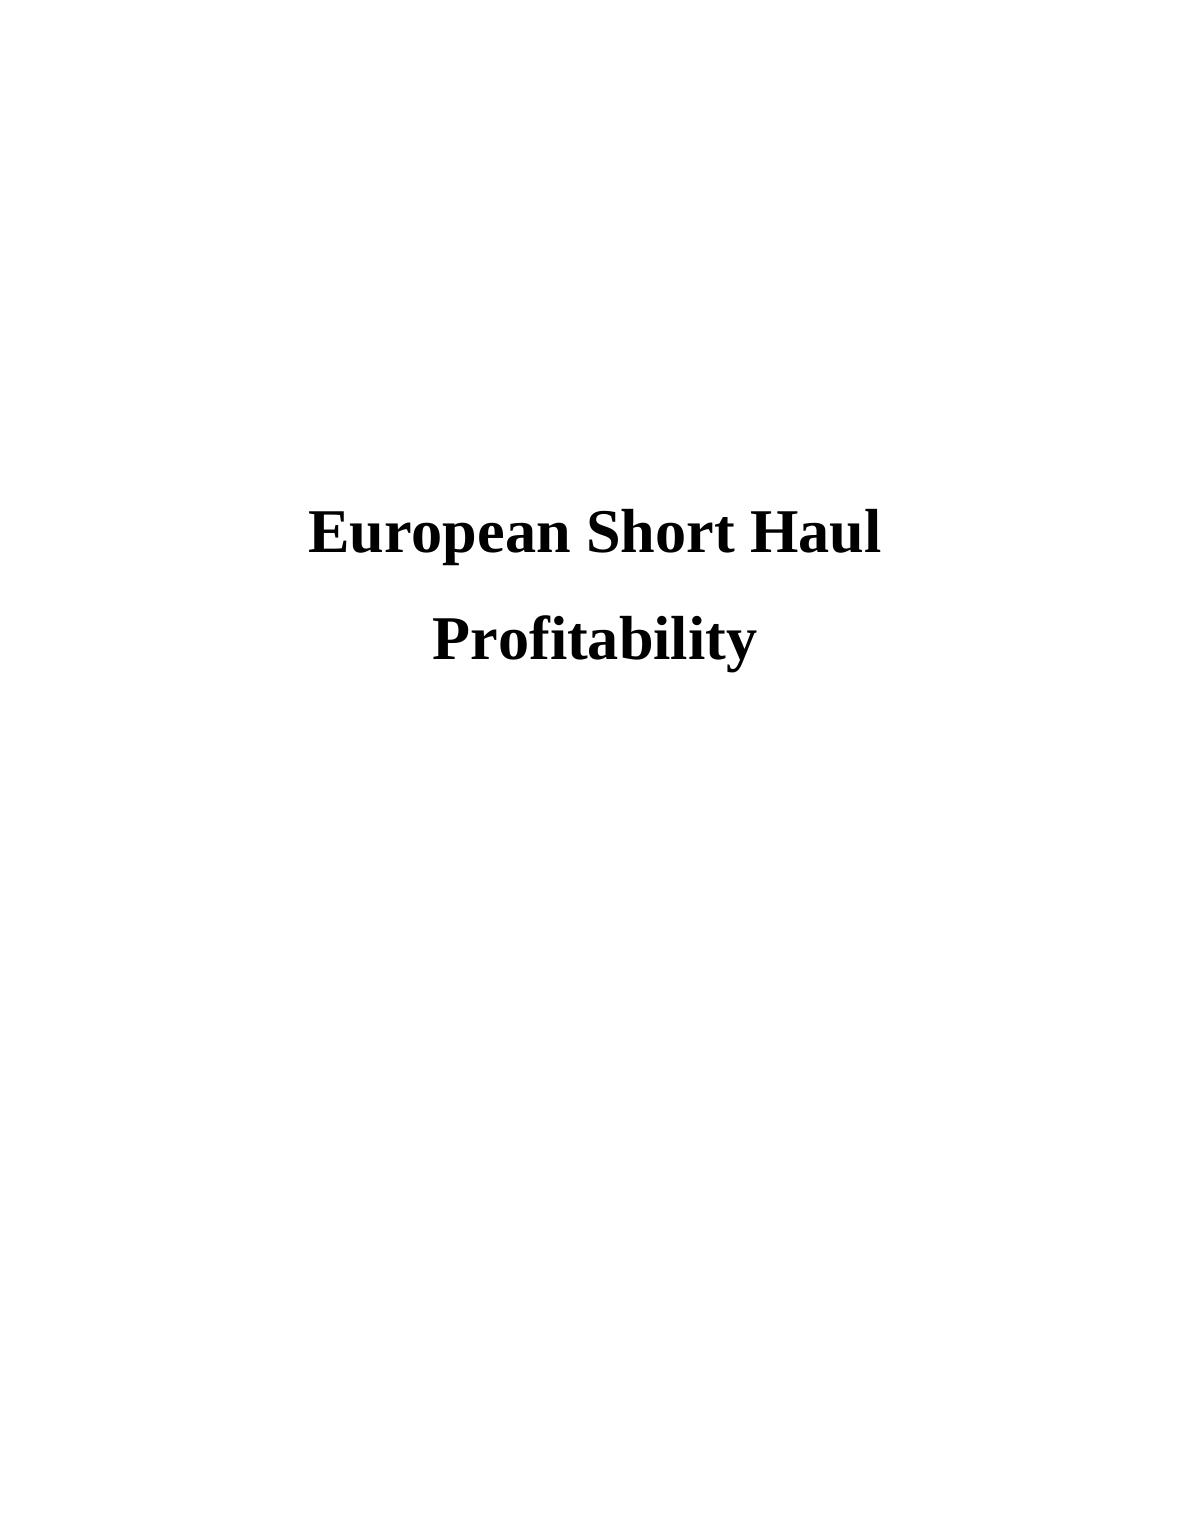 European Short Haul Profitability_1